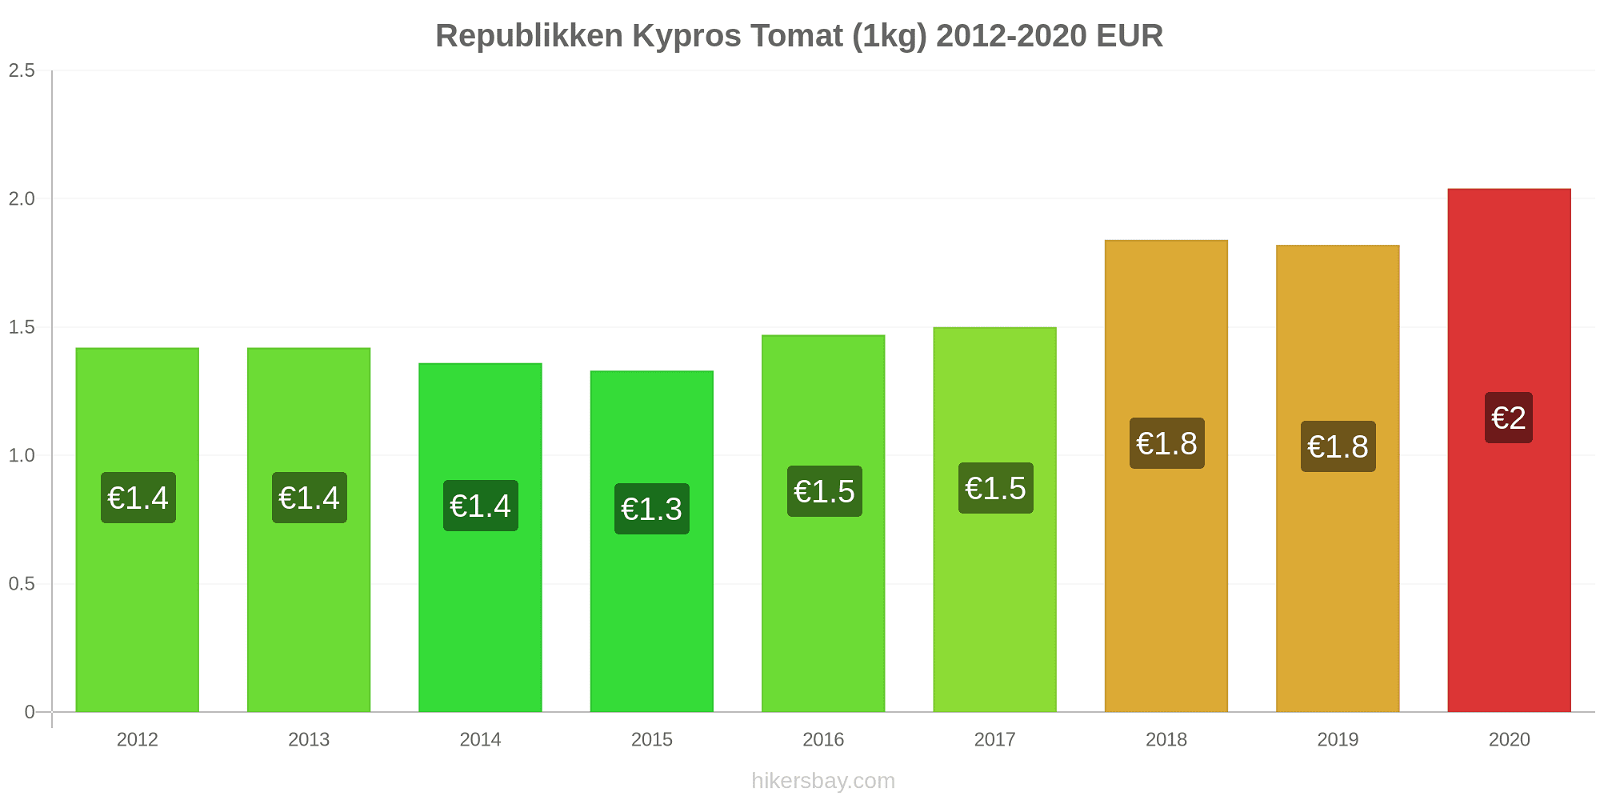 Republikken Kypros prisendringer Tomat (1kg) hikersbay.com